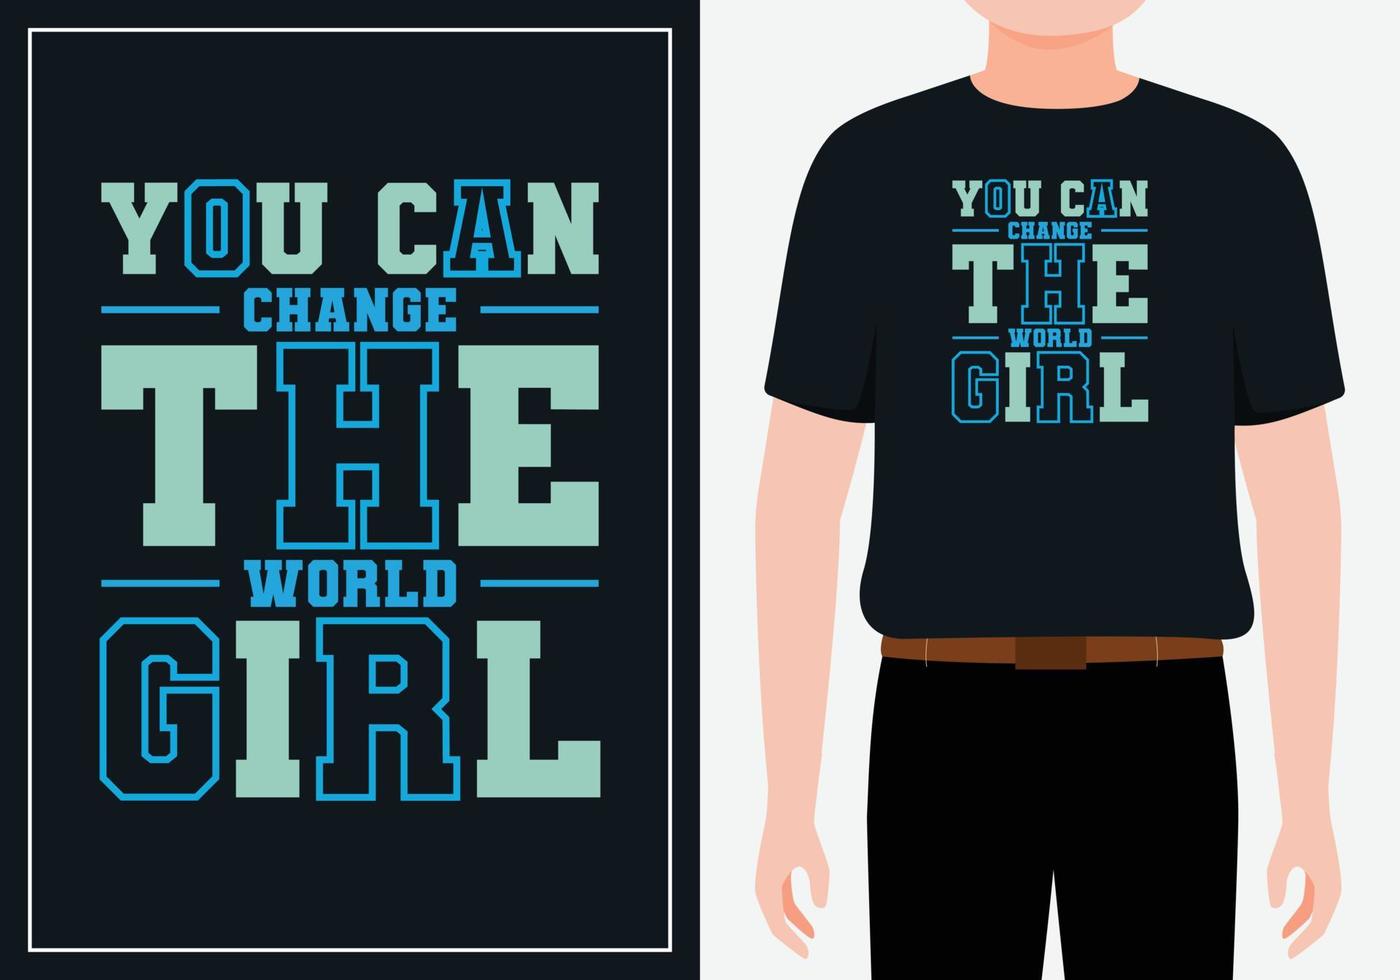 je kunt de wereld veranderen meisje moderne citaten t-shirtontwerp gratis vector